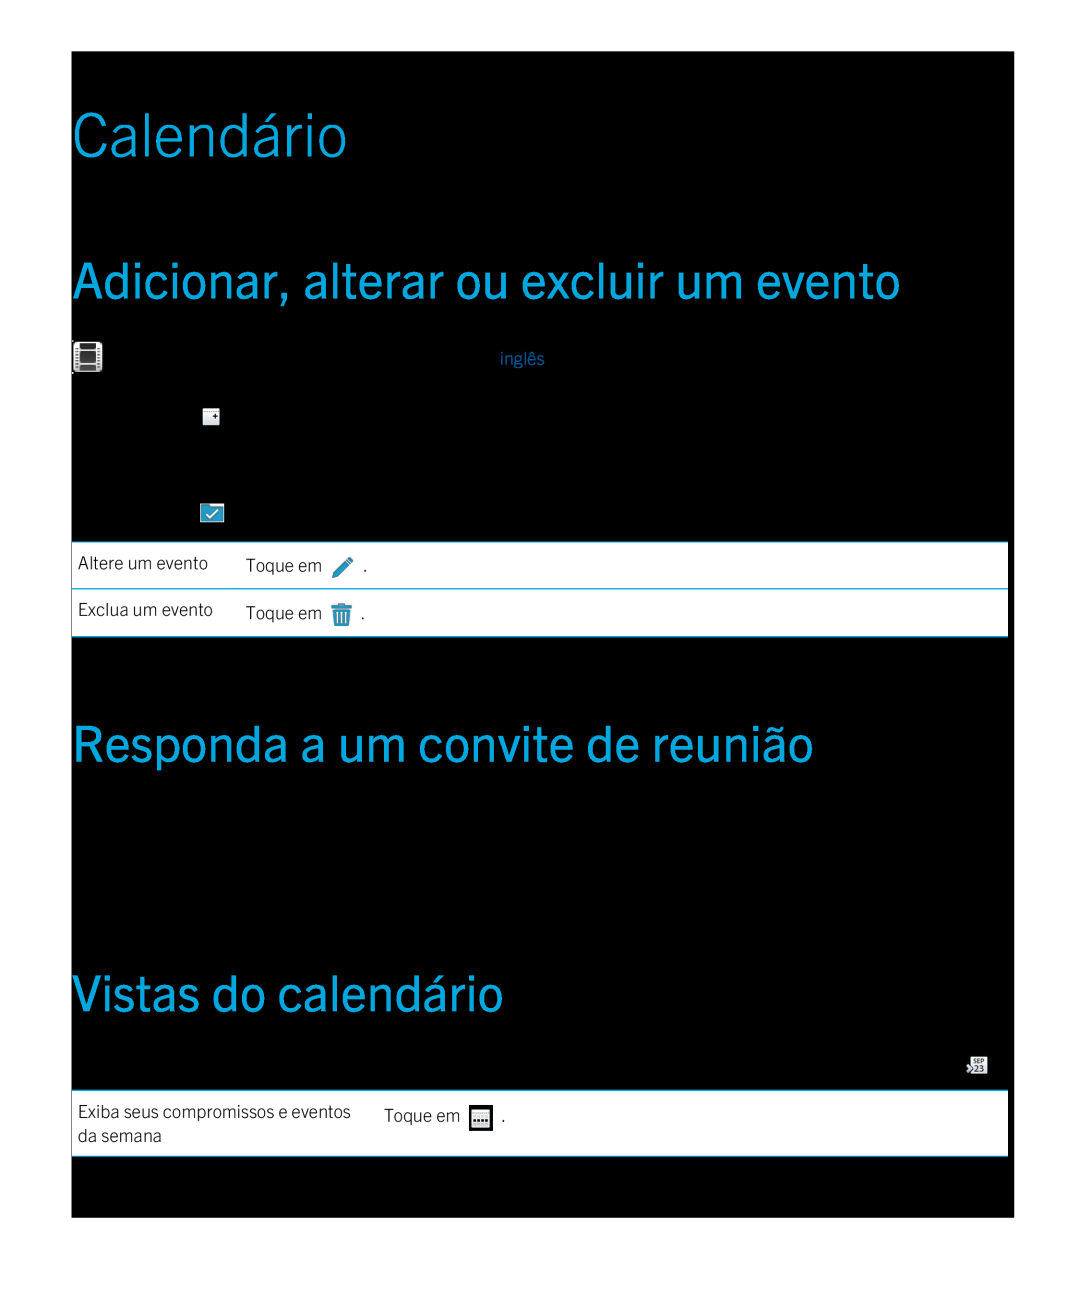 Blackberry 2.0.1 manual Calendário, Adicionar, alterar ou excluir um evento, Responda a um convite de reunião 